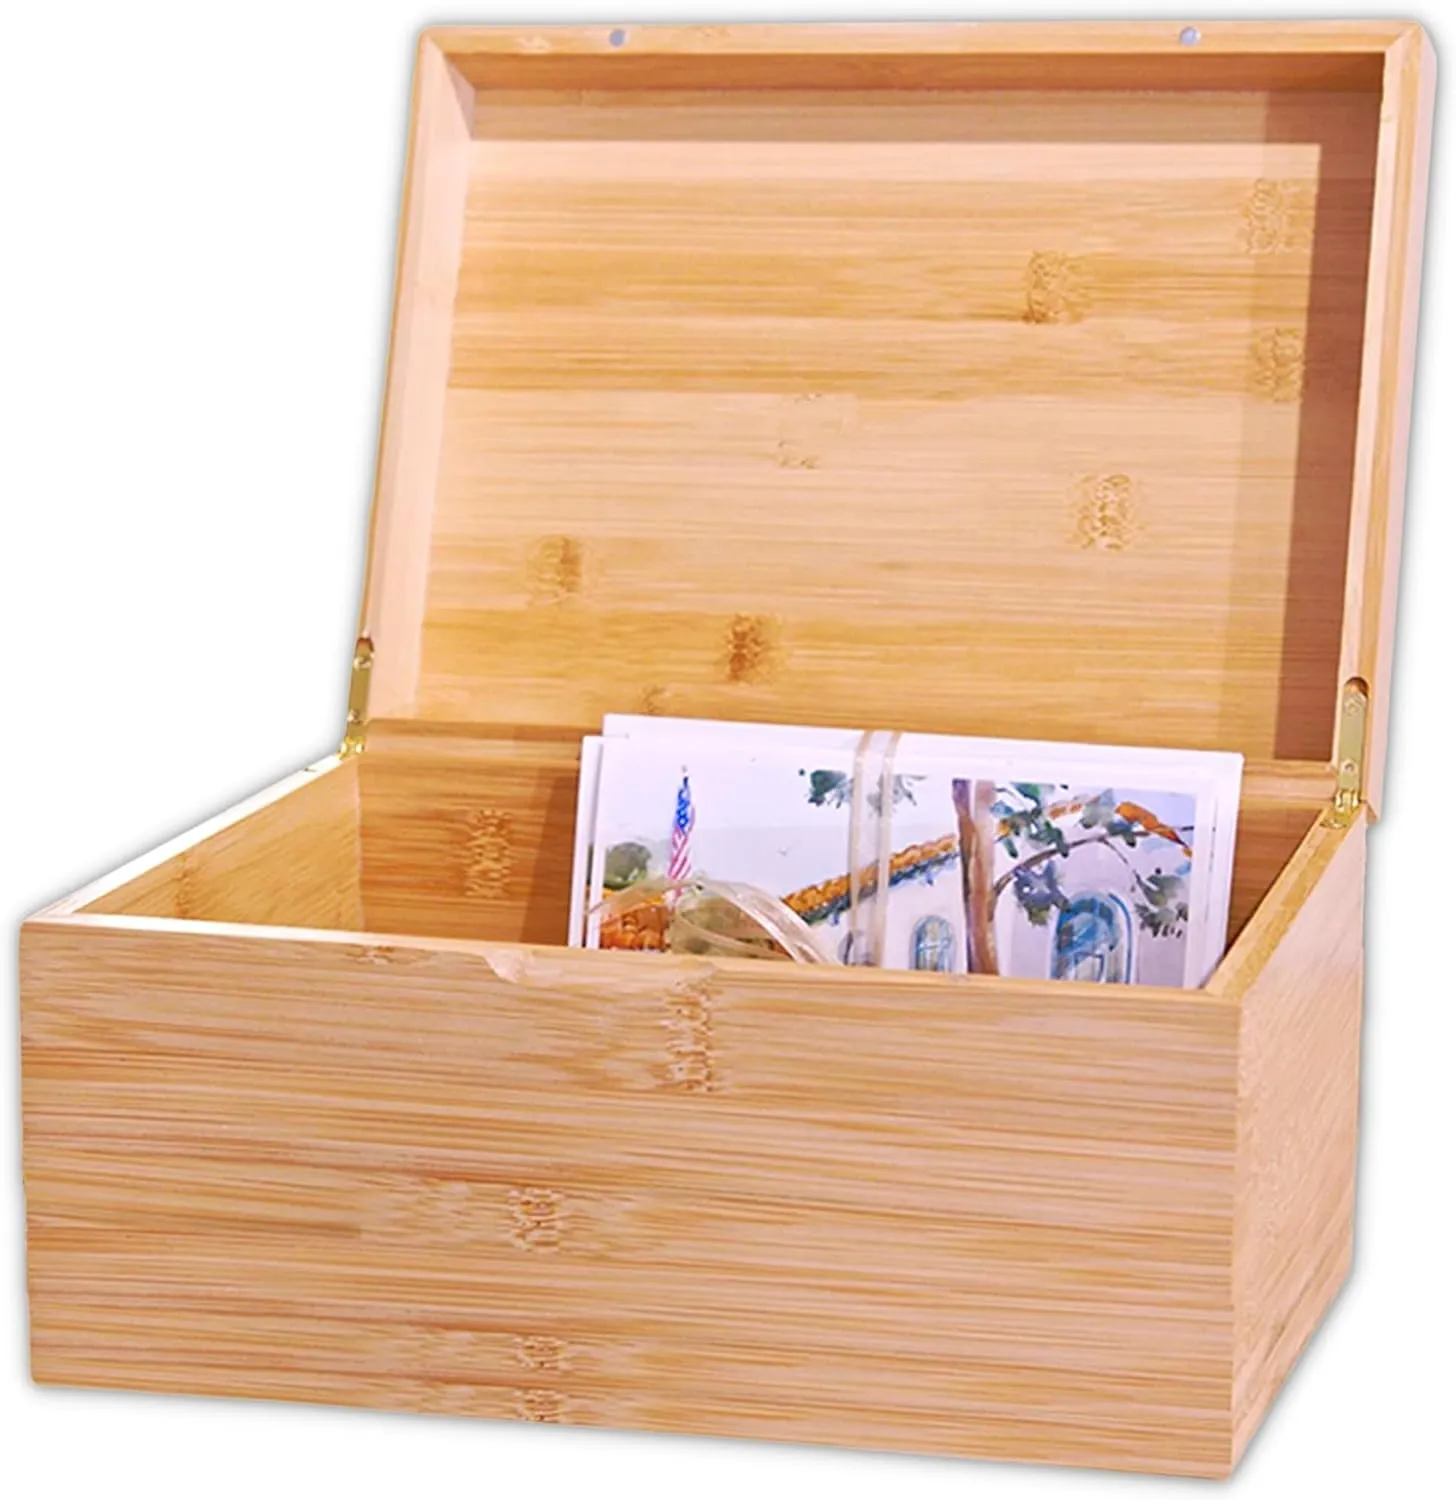 Caja de almacenamiento de bambú-Caja de almacenamiento de bambú natural y adornada con la flor de la vida y un acabado suave, caja de almacenamiento de recuerdos